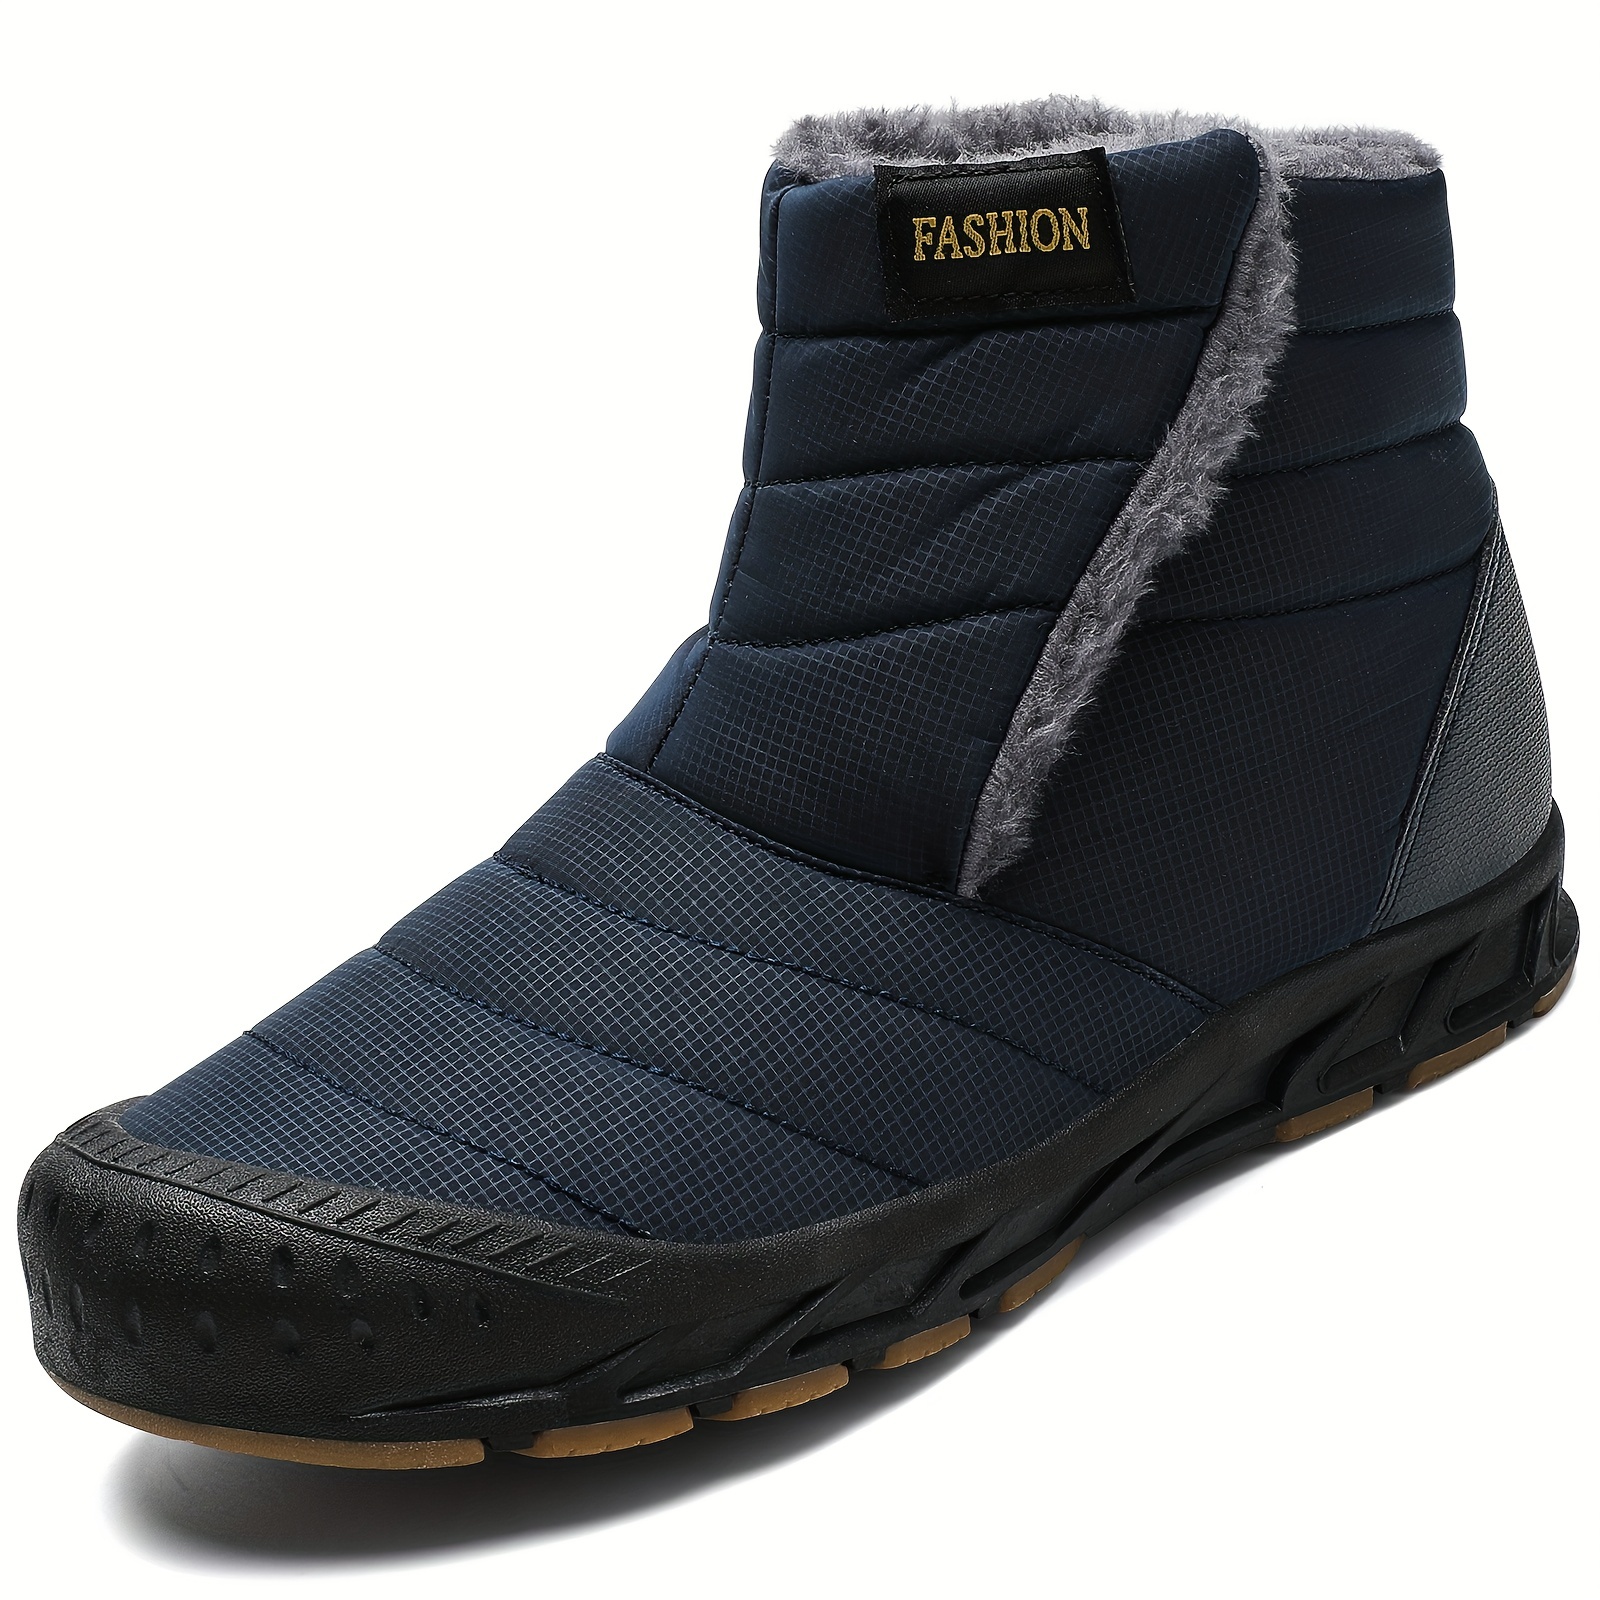 Men's Winter Casual Waterproof Boots